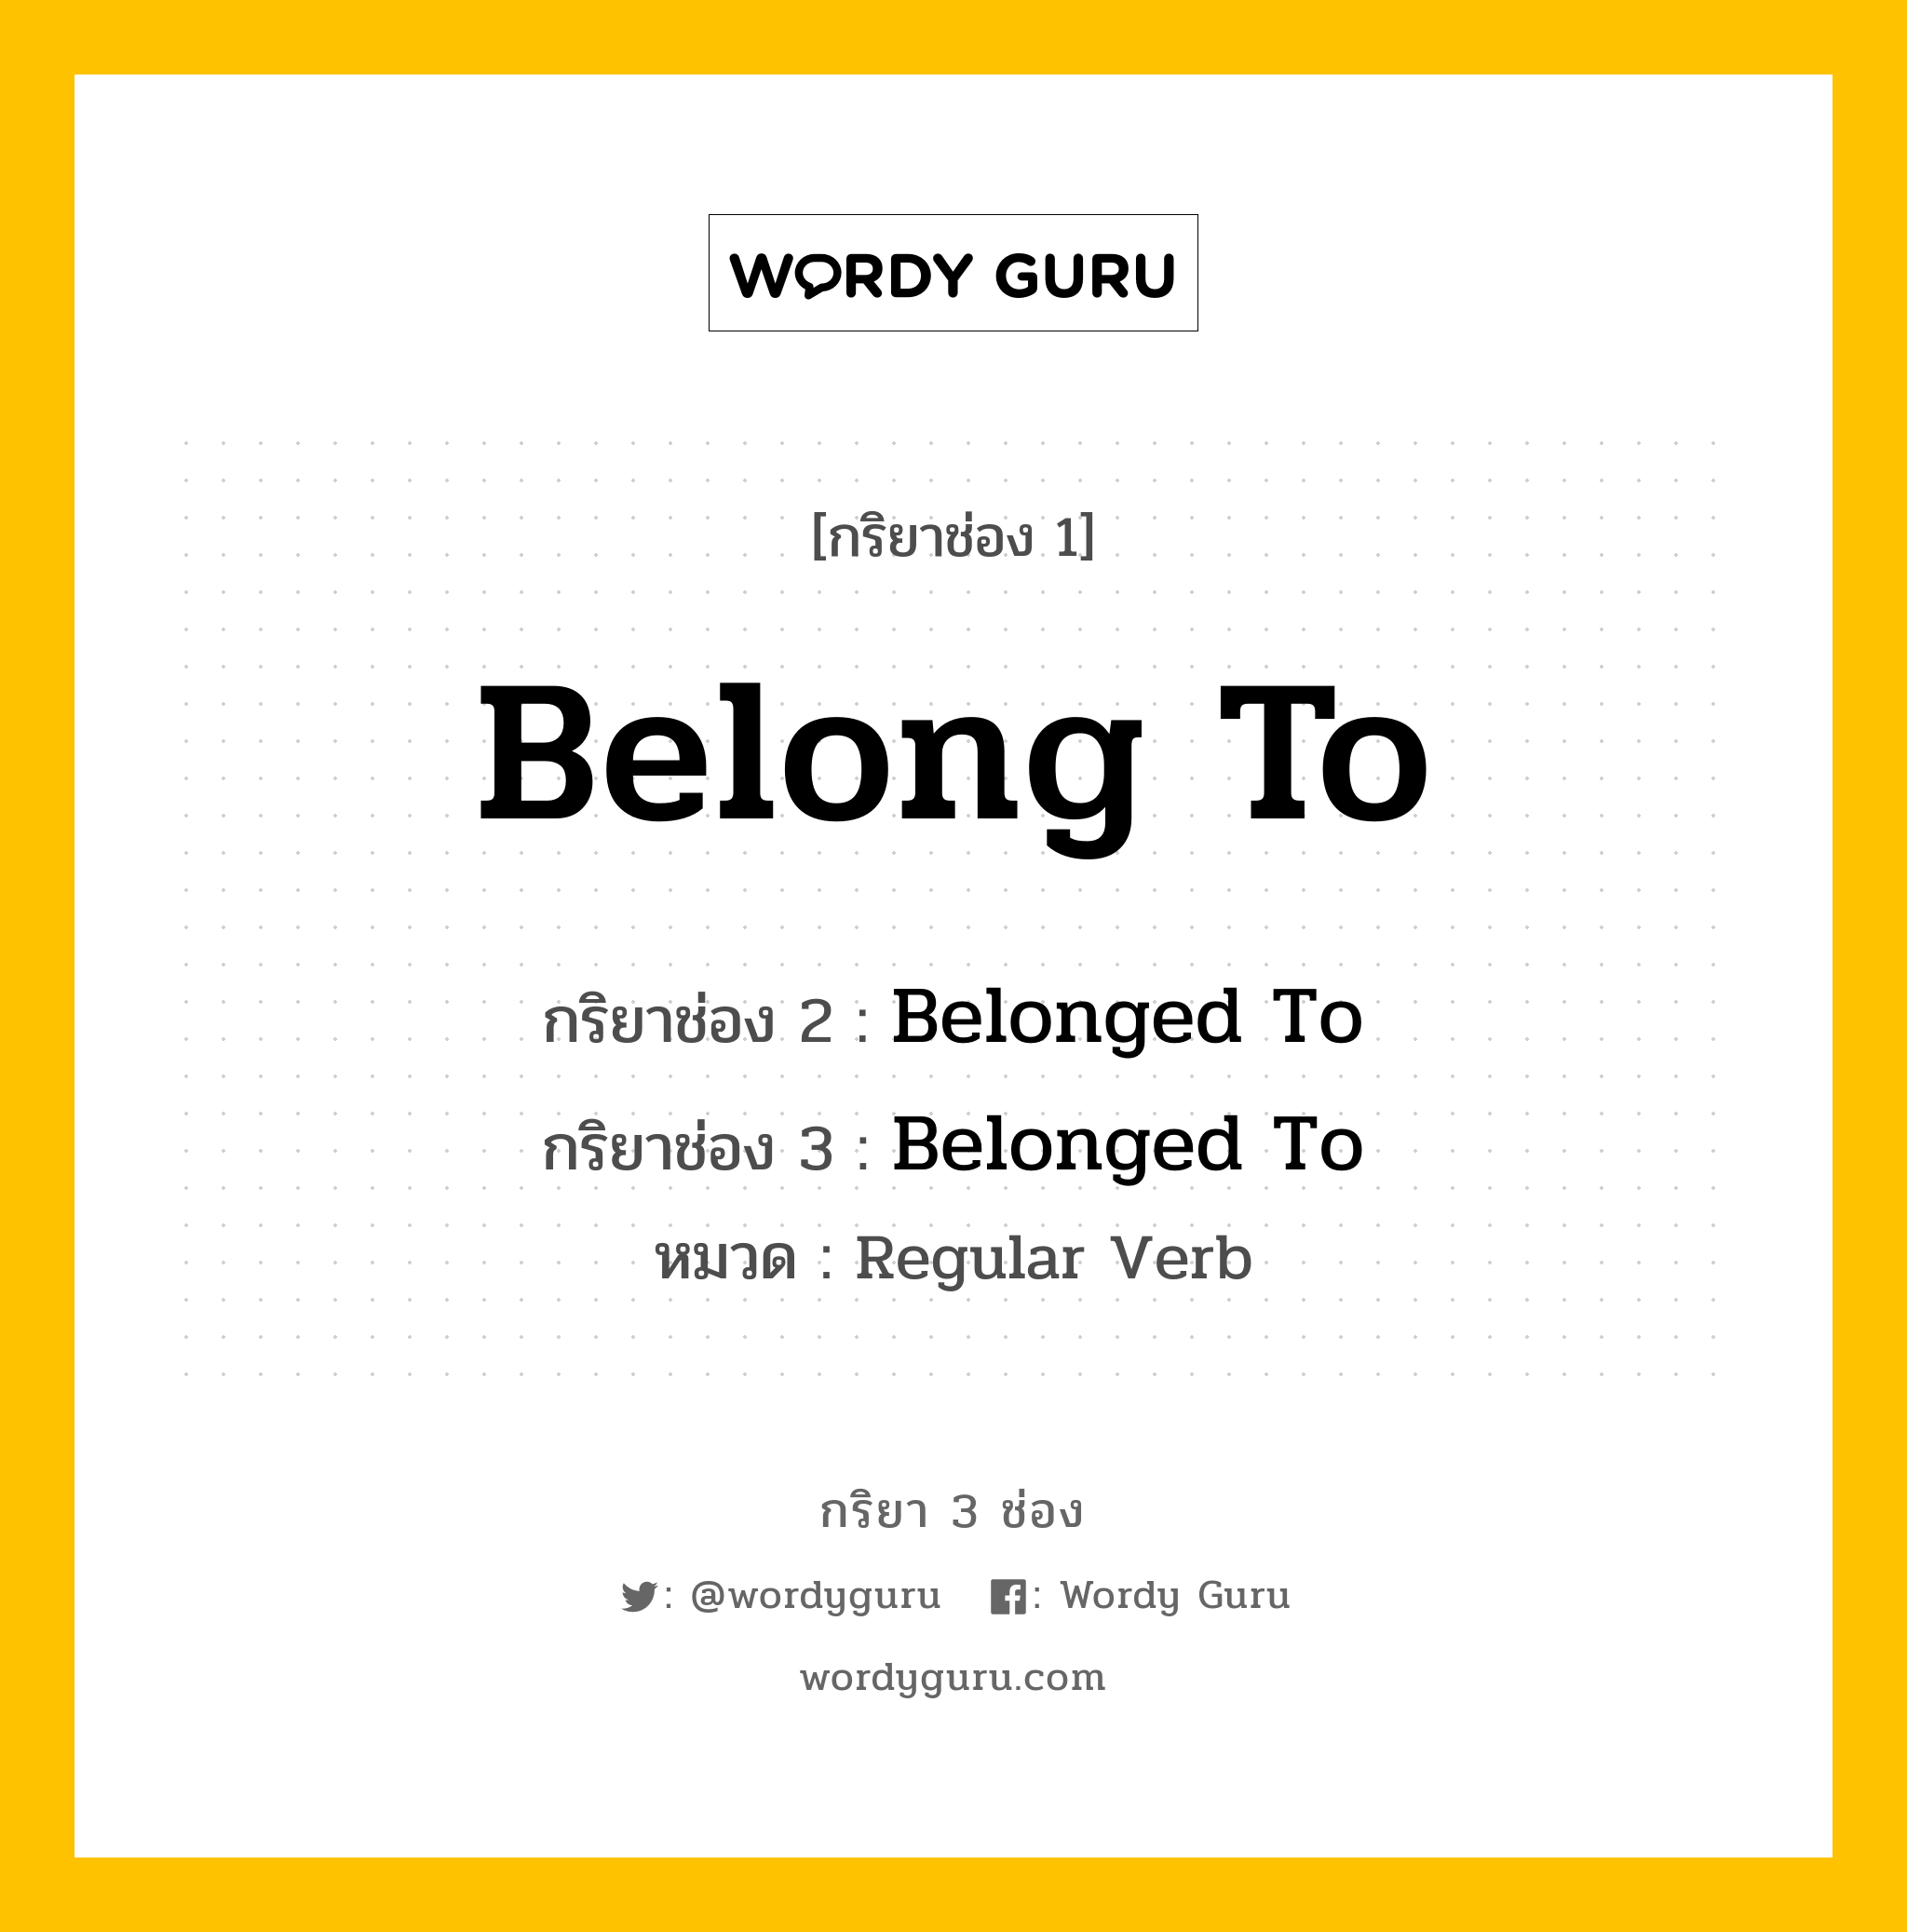 กริยา 3 ช่อง: Belong To ช่อง 2 Belong To ช่อง 3 คืออะไร, กริยาช่อง 1 Belong To กริยาช่อง 2 Belonged To กริยาช่อง 3 Belonged To หมวด Regular Verb หมวด Regular Verb